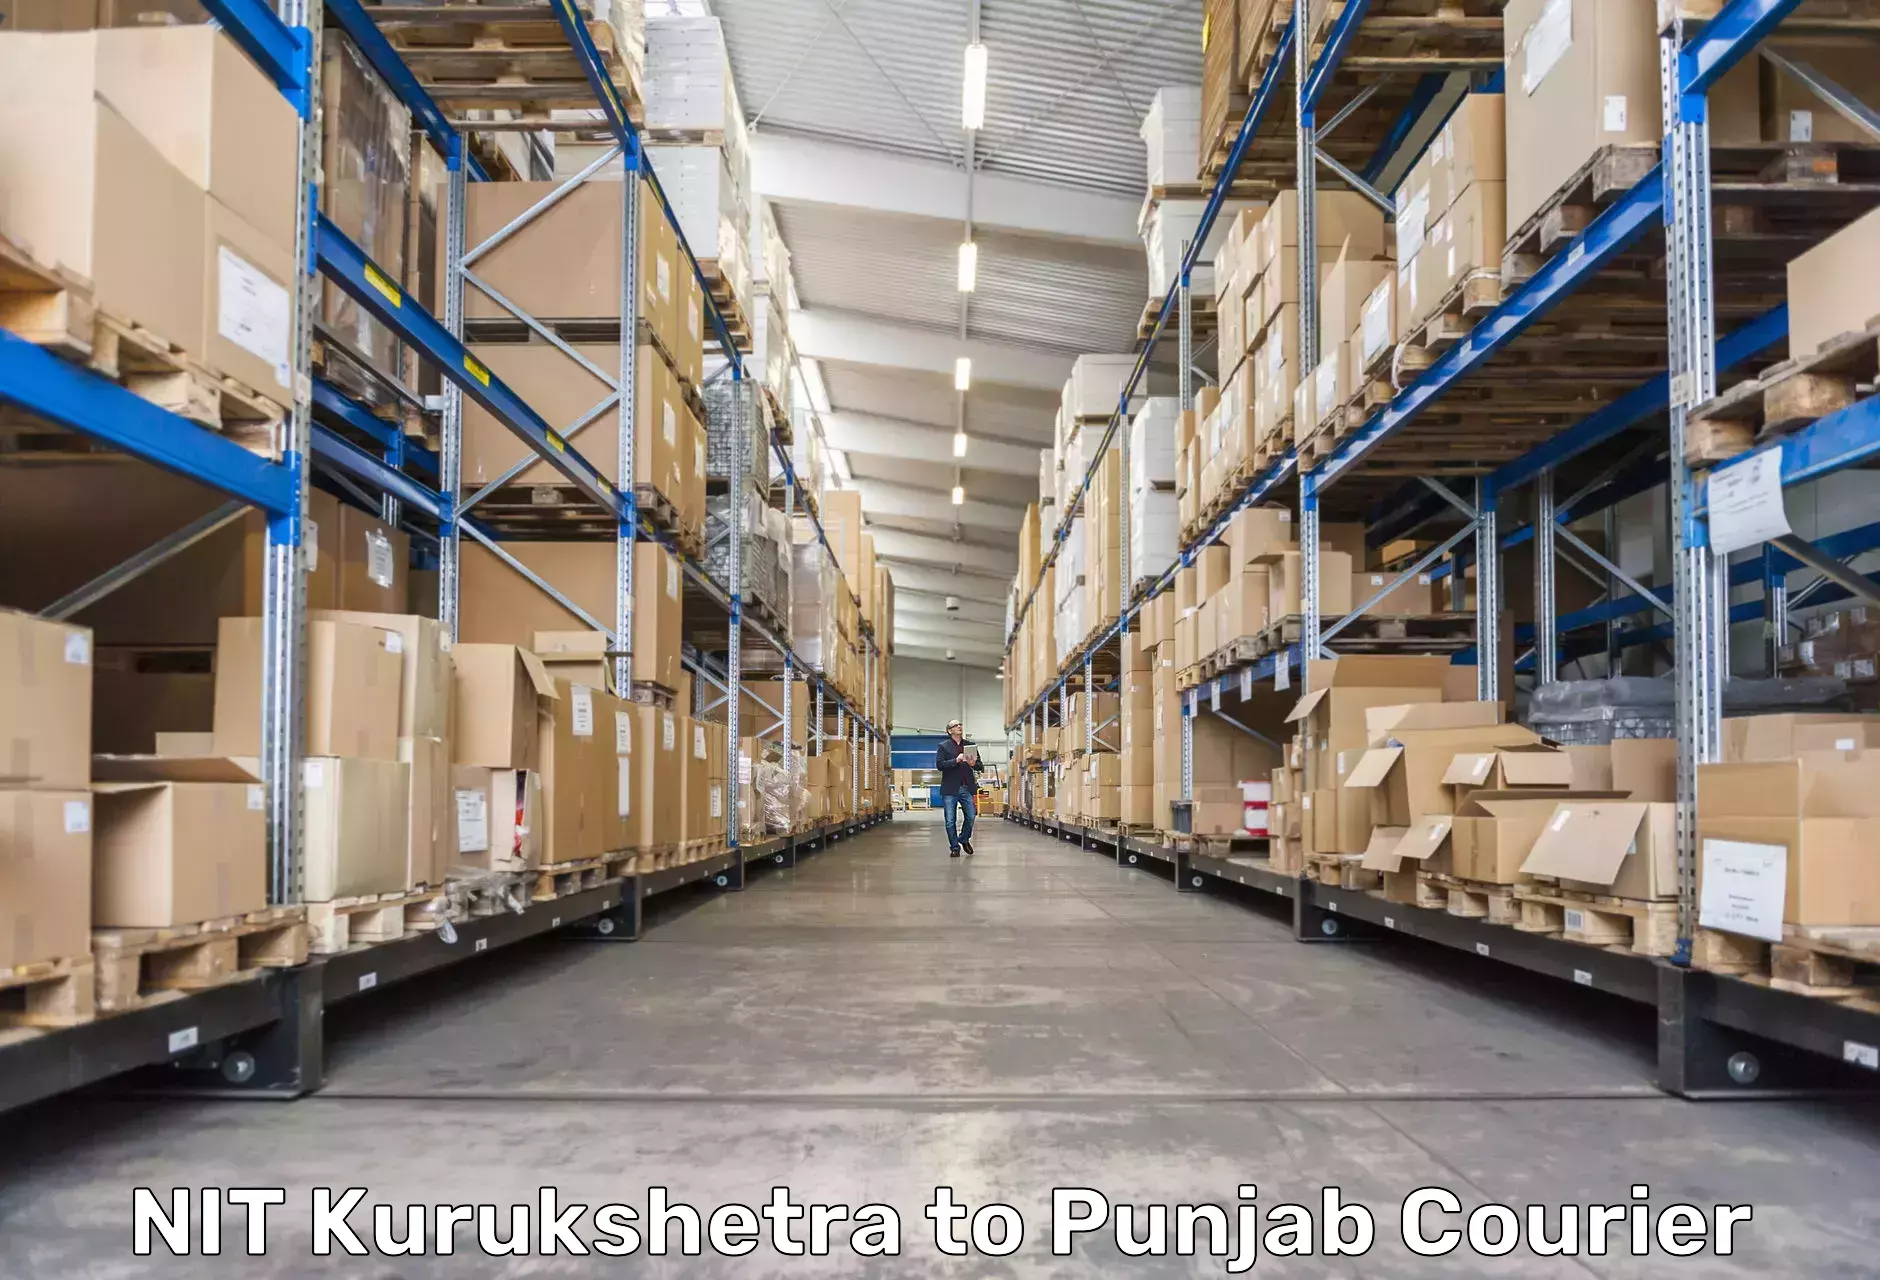 Courier service booking NIT Kurukshetra to Punjab